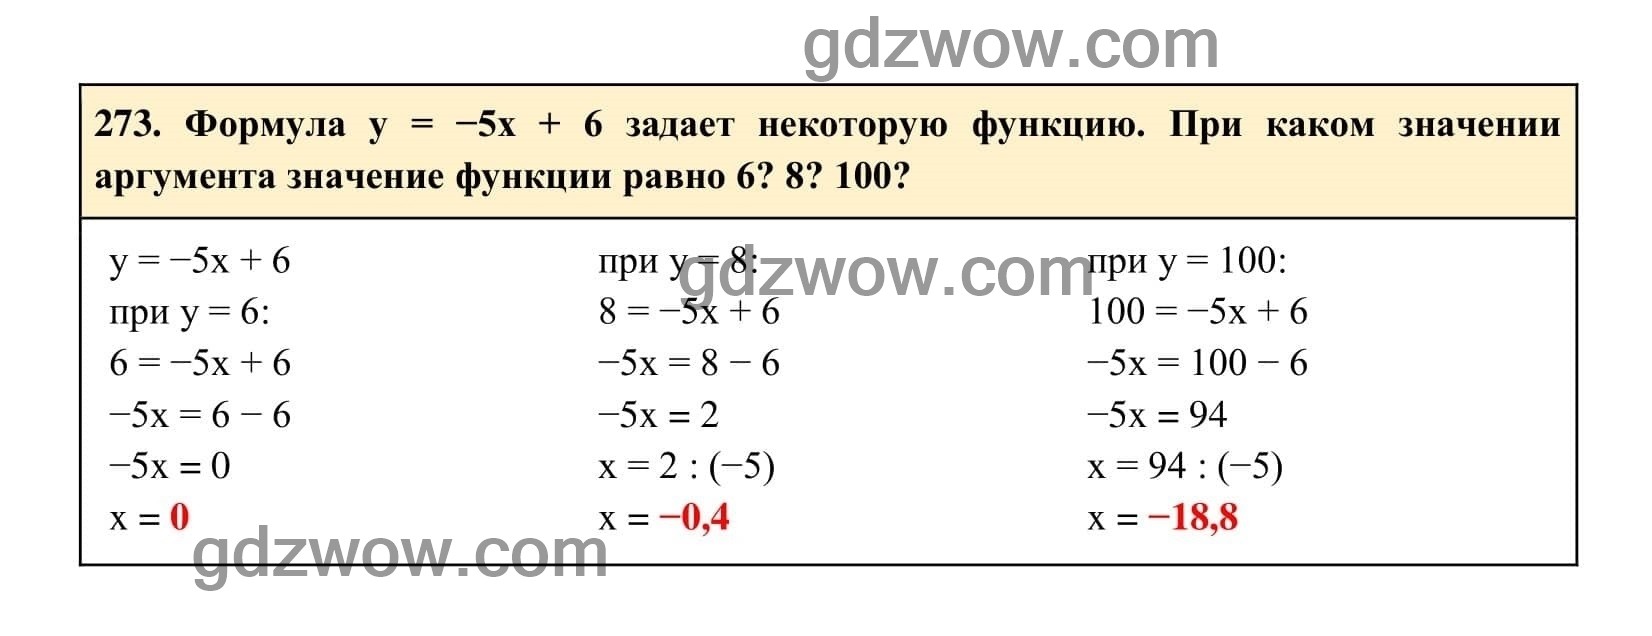 Упражнение 273 - ГДЗ по Алгебре 7 класс Учебник Макарычев (решебник) - GDZwow